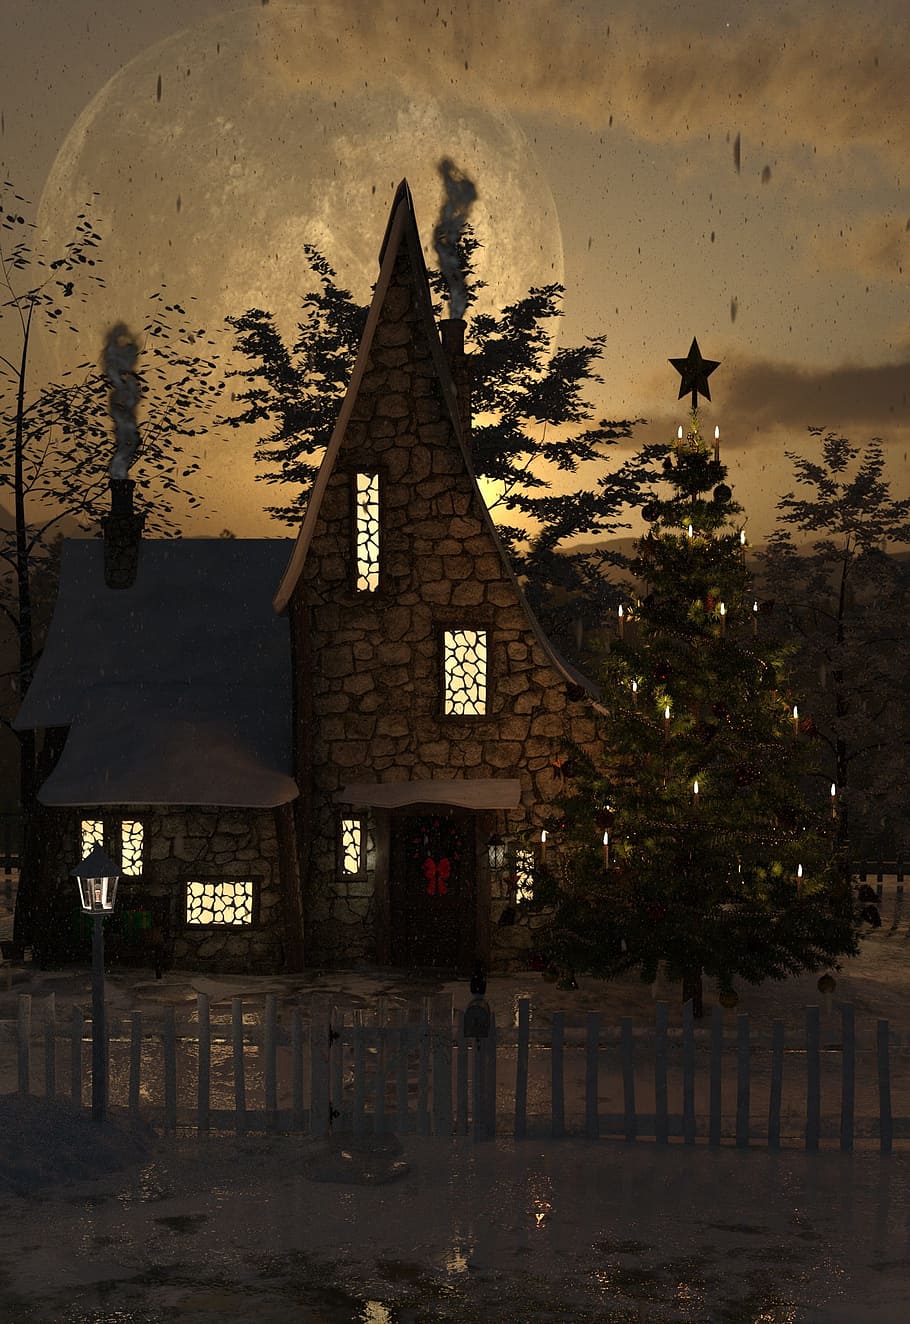 茶色, 黒, 塗装, 家, クリスマス, 冬, 雪, 風景, 出現, クリスマスの時期